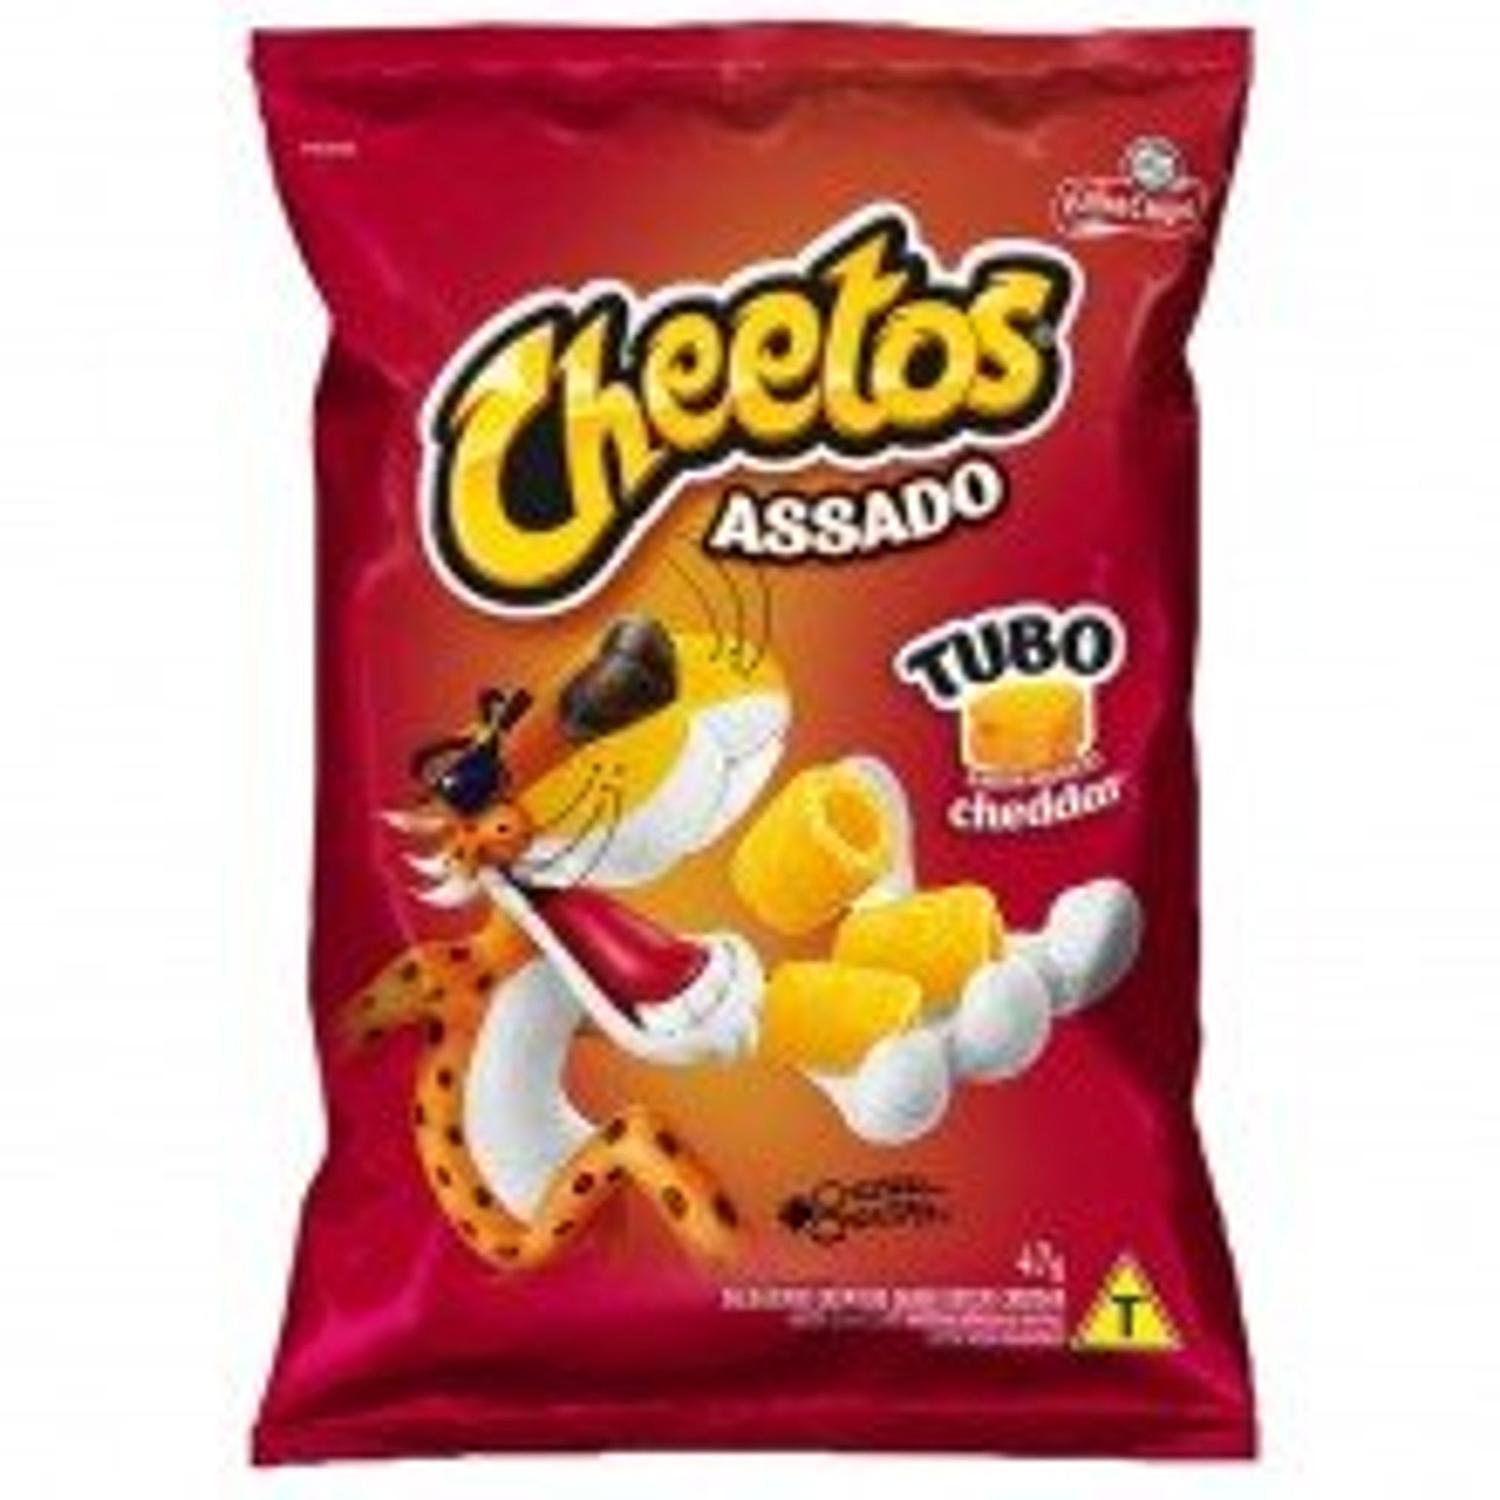 Kit Cheetos Onda Requeijão Elma Chips (45g x 10)